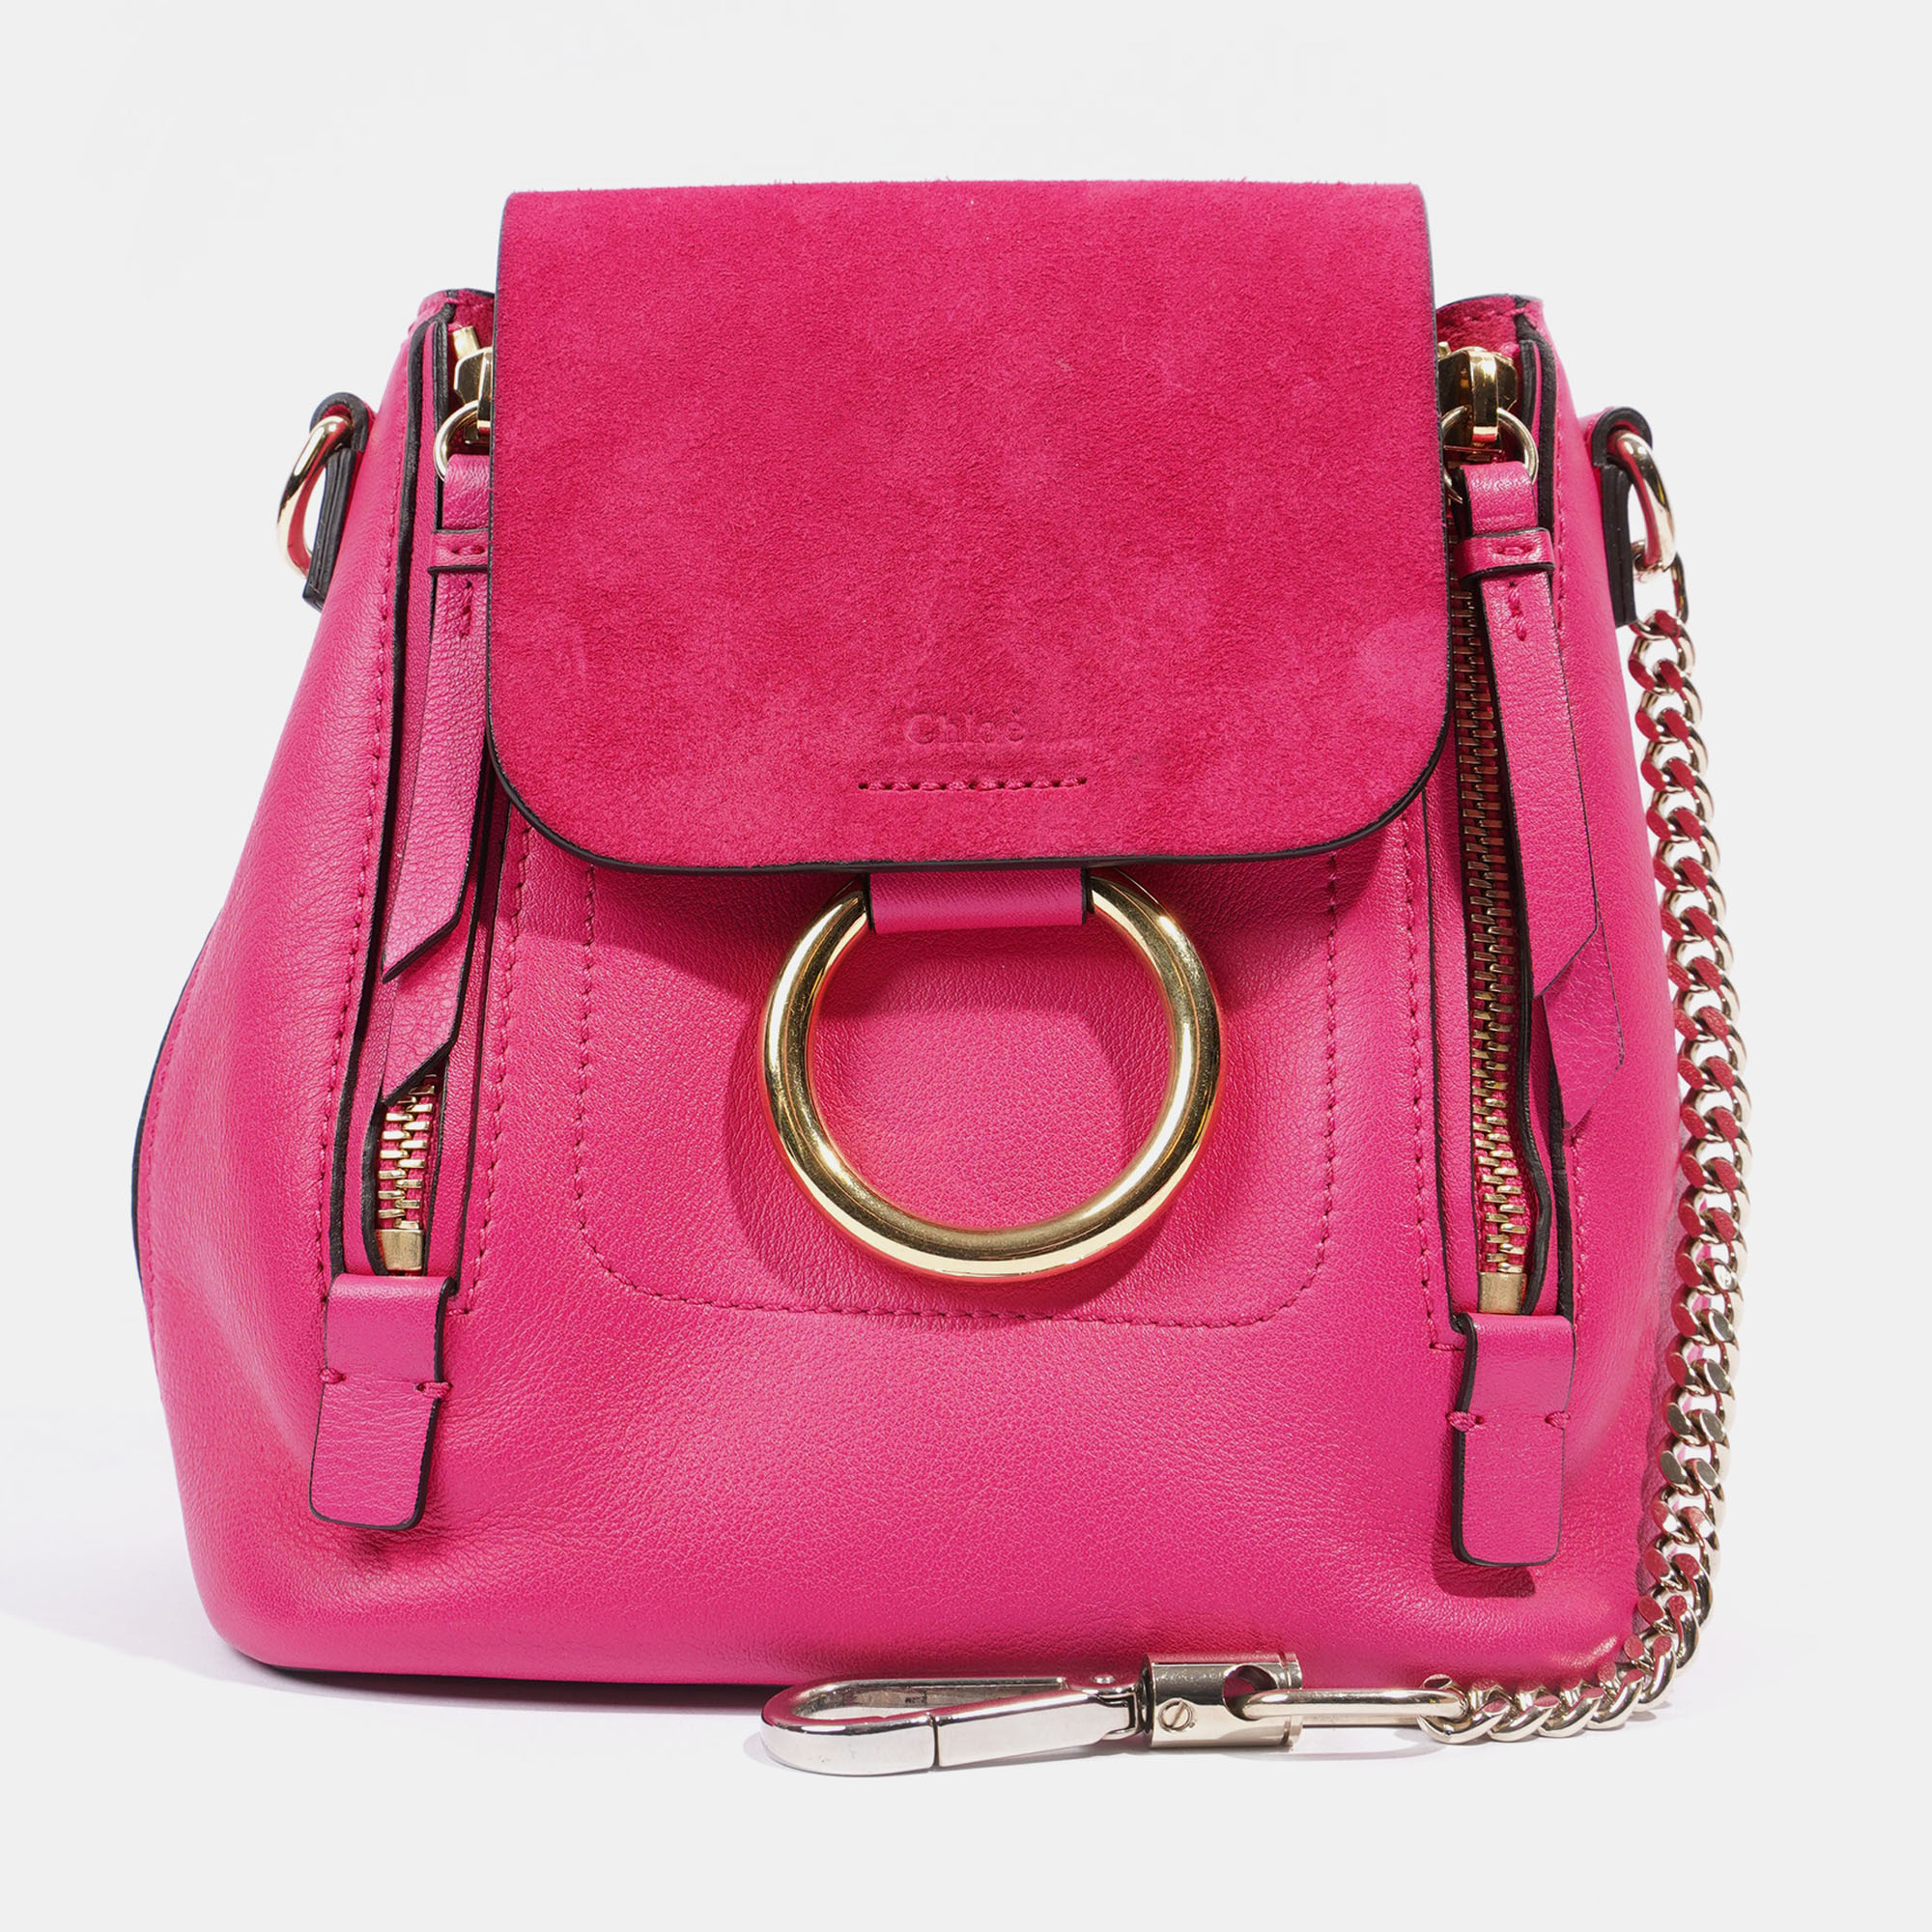 Chloe mini faye backpack hot pink leather